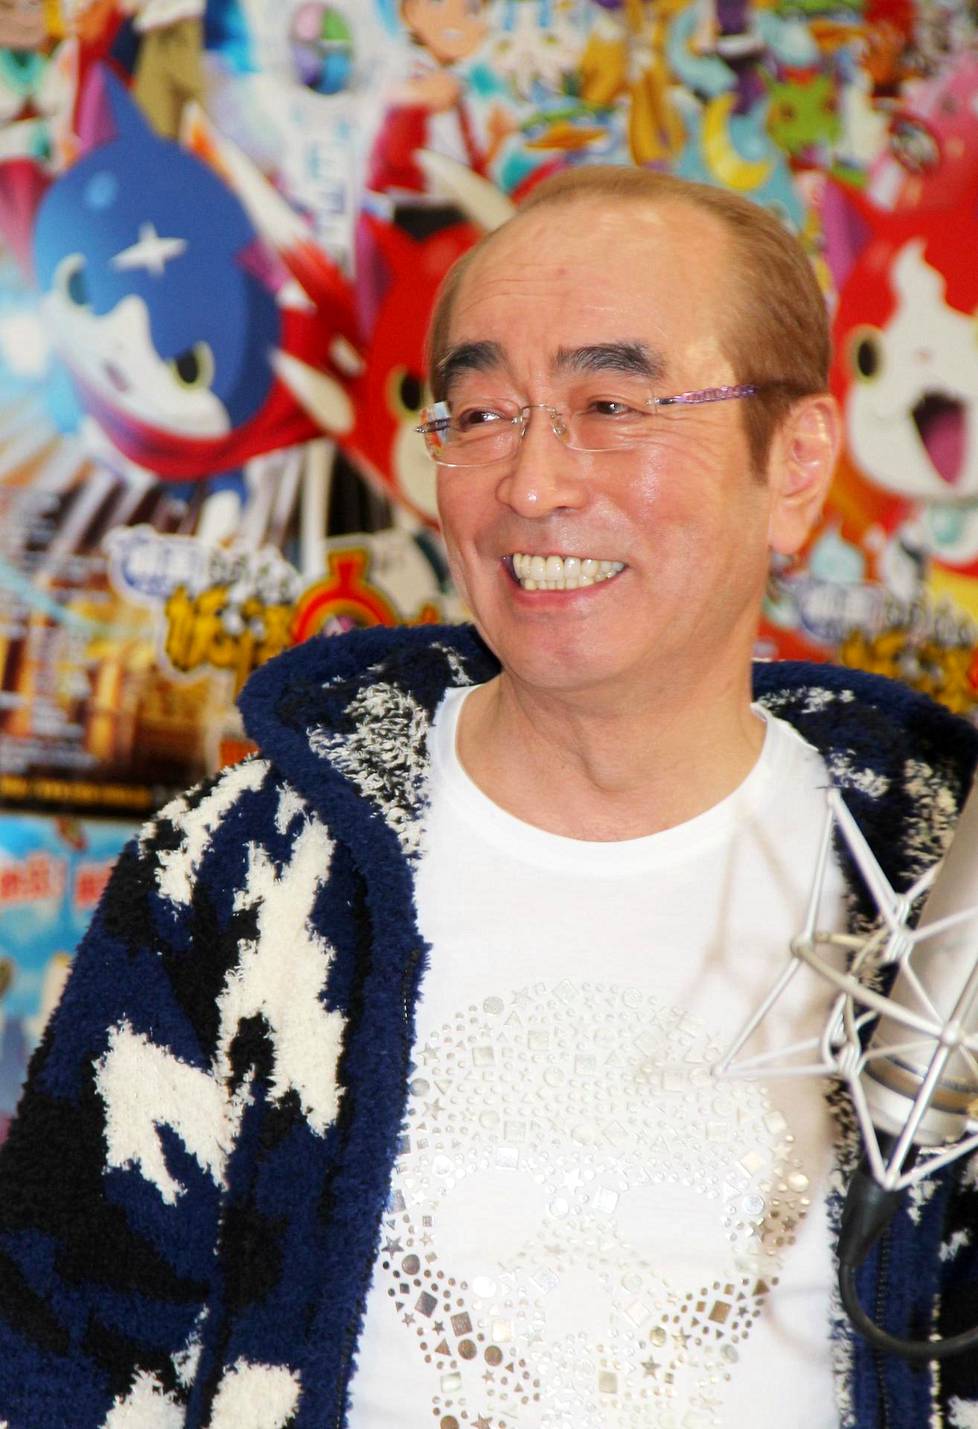 Ken Shimura sai japanilaiset nauramaan viidellä vuosikymmenellä.